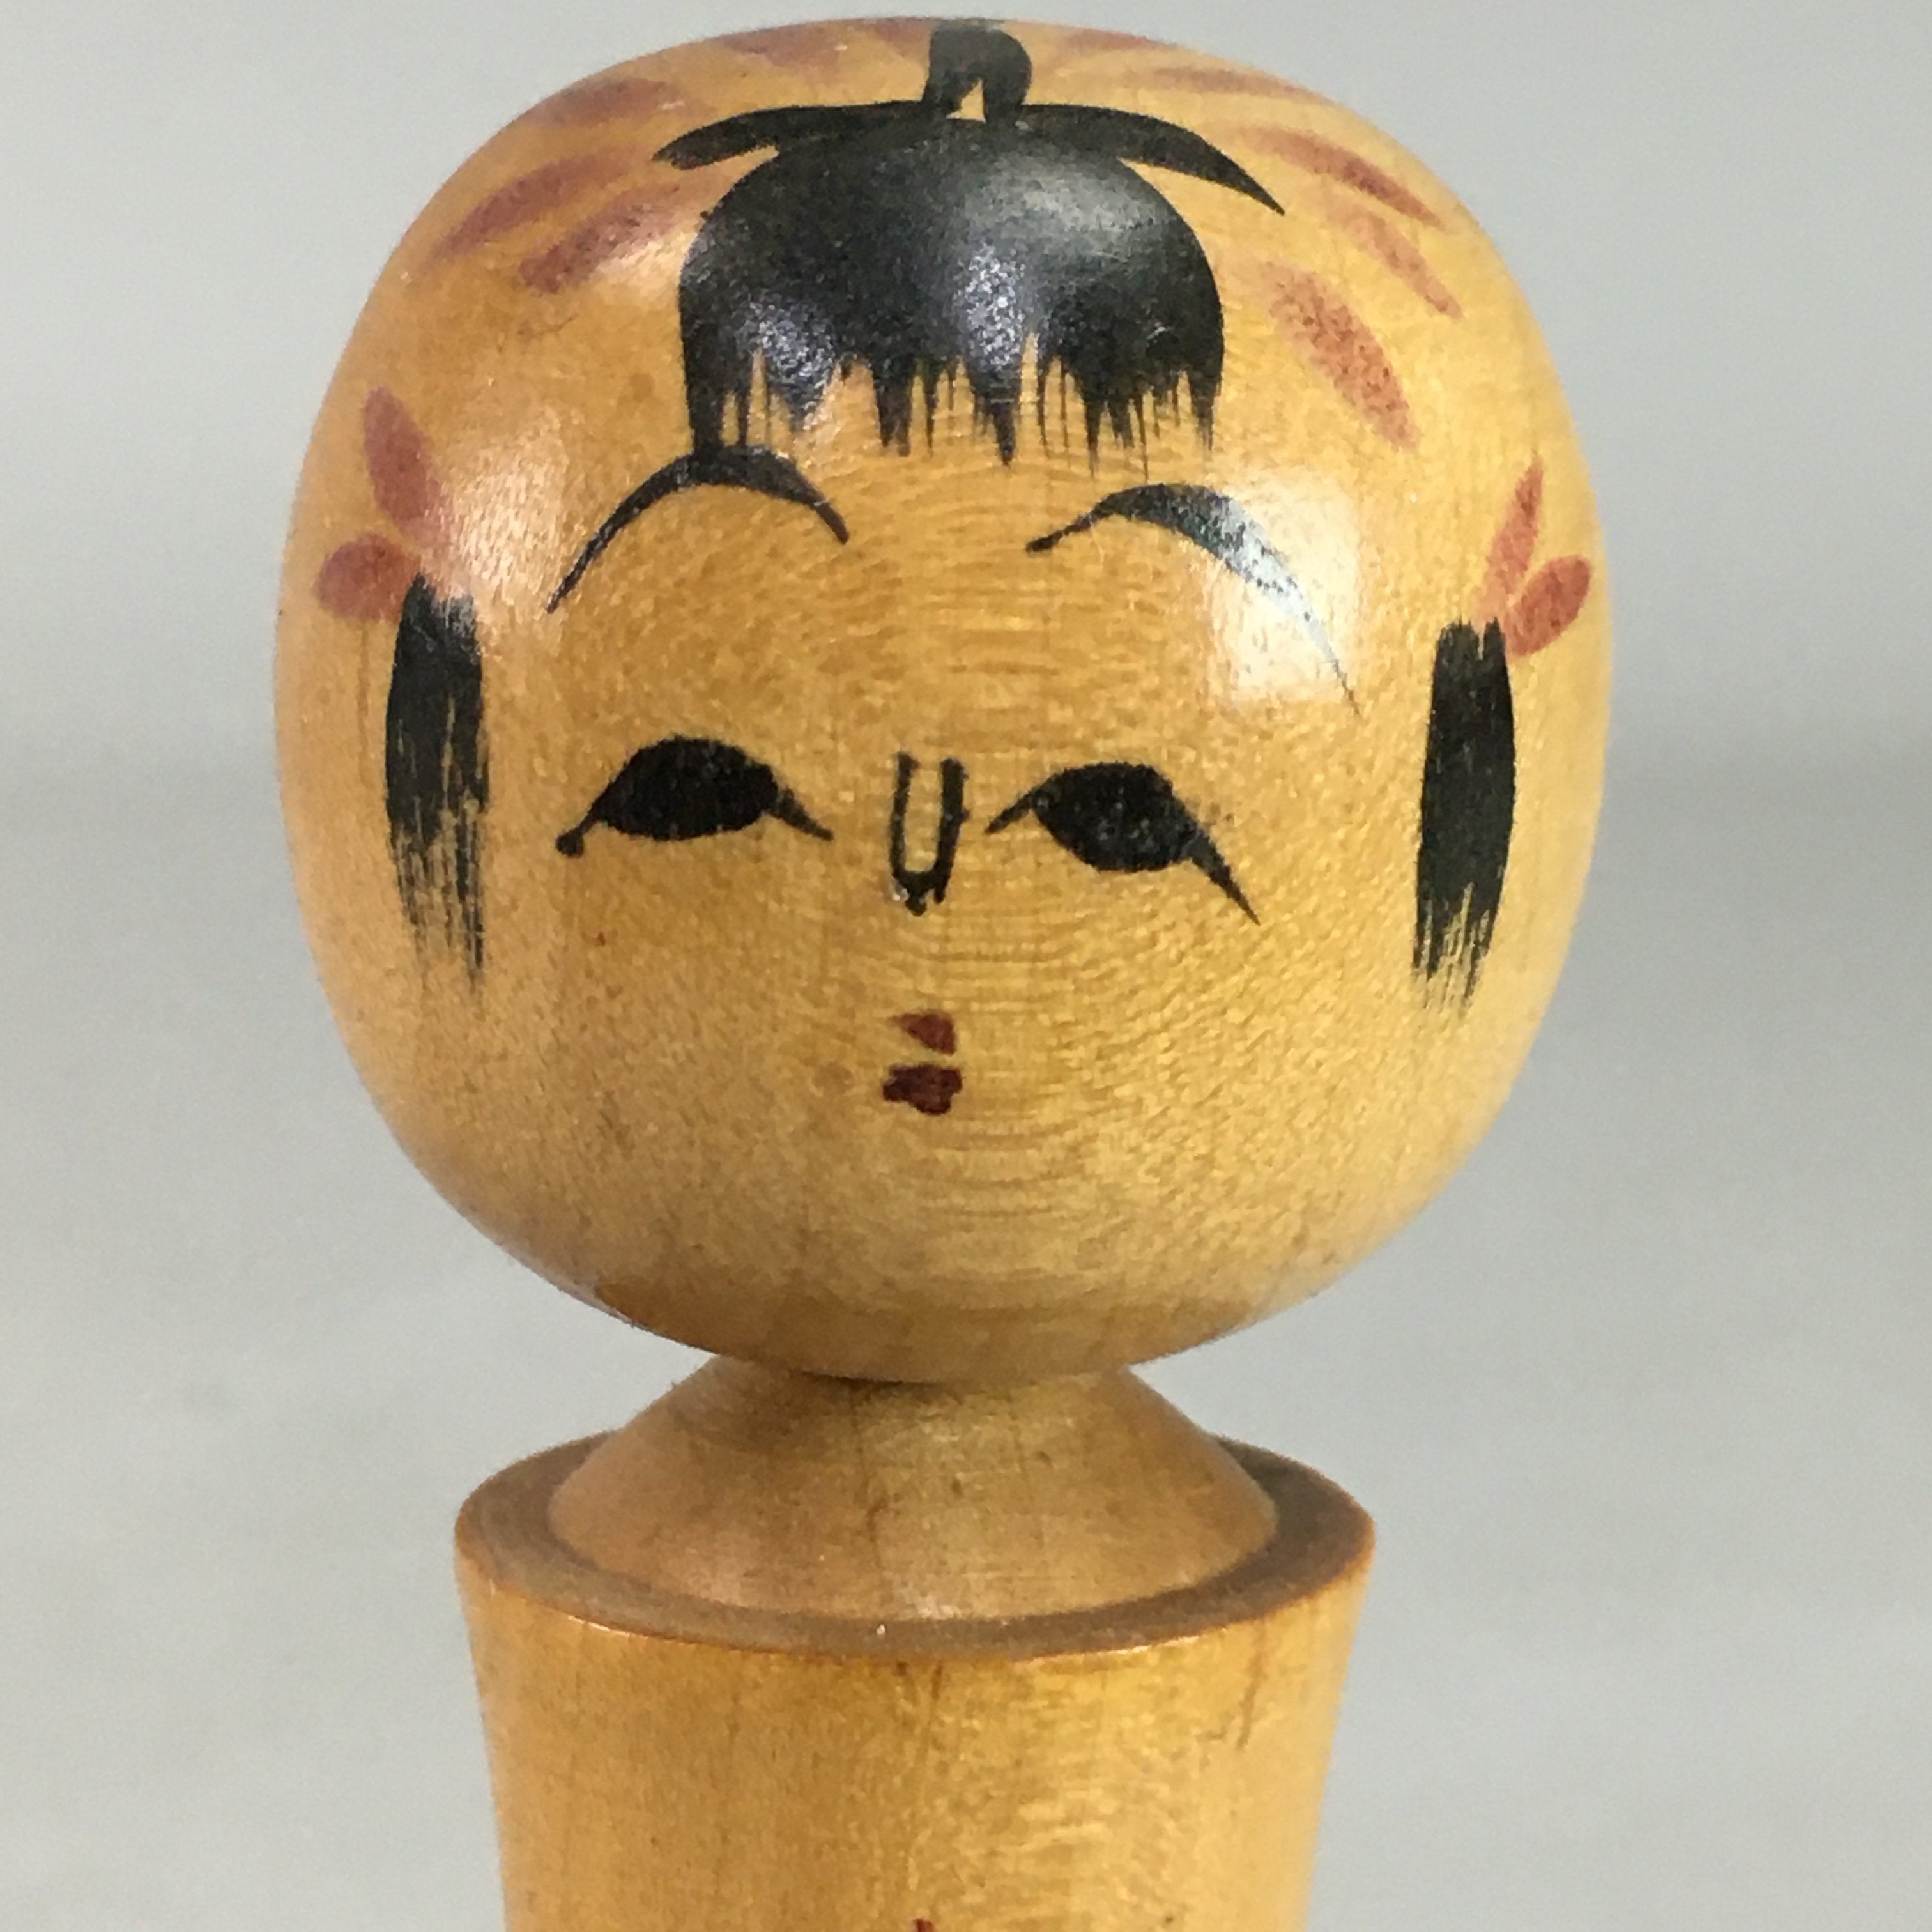 Japanese Kokeshi Doll Vtg Wooden Figurine Hand-Painted Flower Child KF296